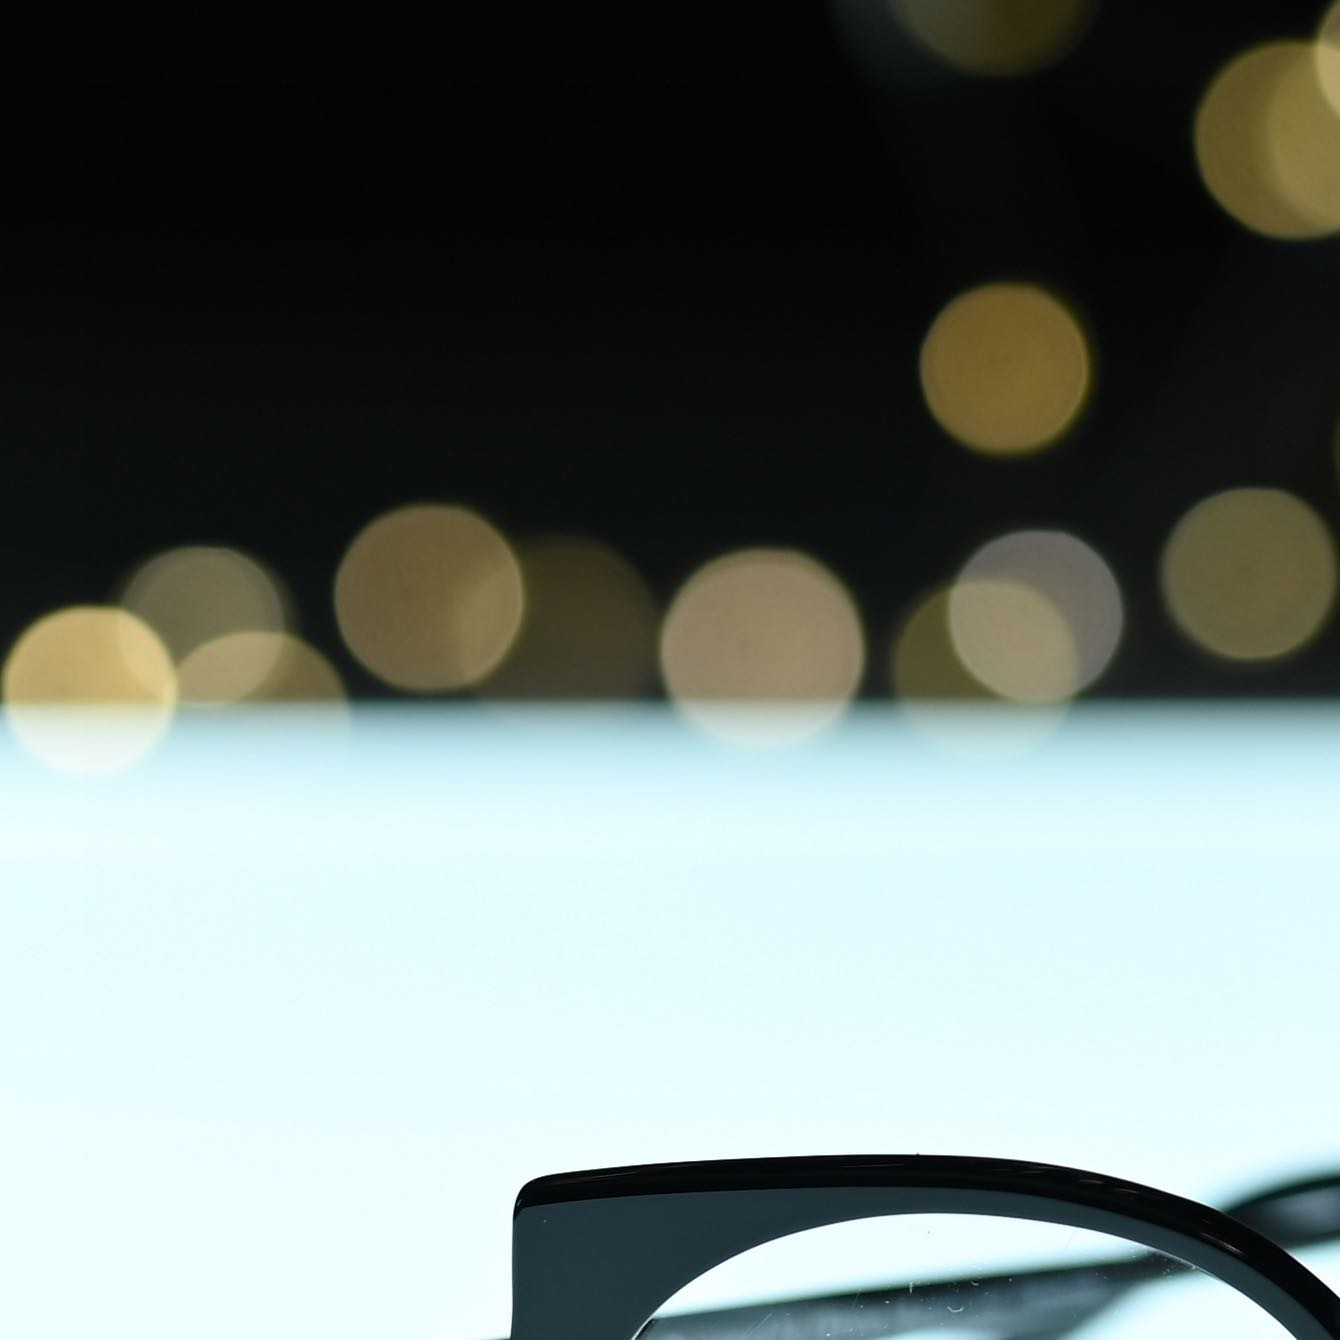 Buon anno e un sereno 2022 da Ottica Mantovani Venezia.

👓 Ottica Mantovani Venezia dal 1871, occhiali d’autore per donna e uomo.

ℹ️ Visita il nostro sito per vedere tutta la nostra produzione www.otticamantovani.it

📞 Chiamaci per informazioni +39 0415223427

#sunglasses #otticamantovani #otticamantovanivenezia #lunettes #brillen #brillenstyling #ottica #designedinvenice #glasses #madeinitaly  #eyeglasses #eyewear  #eyewearfashion #optical #eyes #vision #occhiali #optometry  #stylish #design #occhialidavista #uniqueeyewear #eye #opticalshop #ophthalmology #happynewyear #buonanno 

Orso by @lacocciaia_ceramica